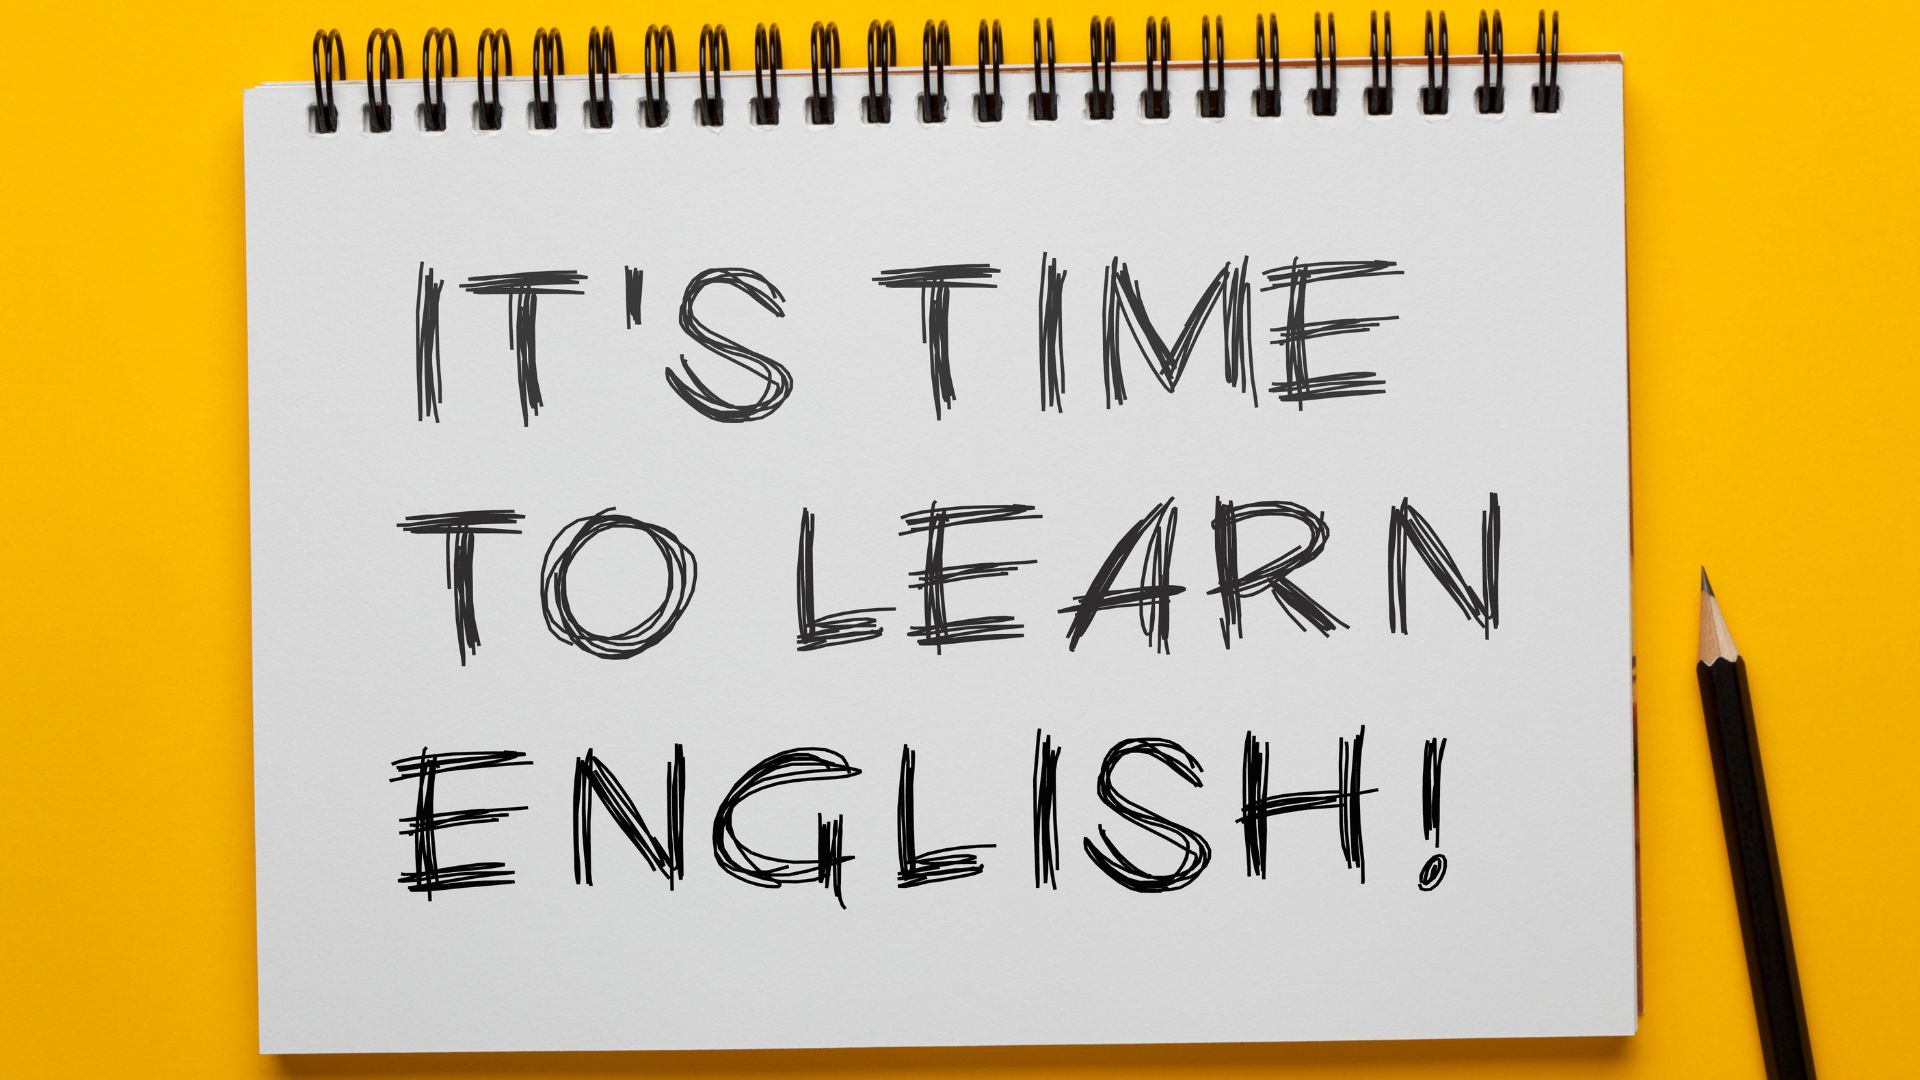 Inglês todos - Inglês todos os dias - Dicas e Vocabulário